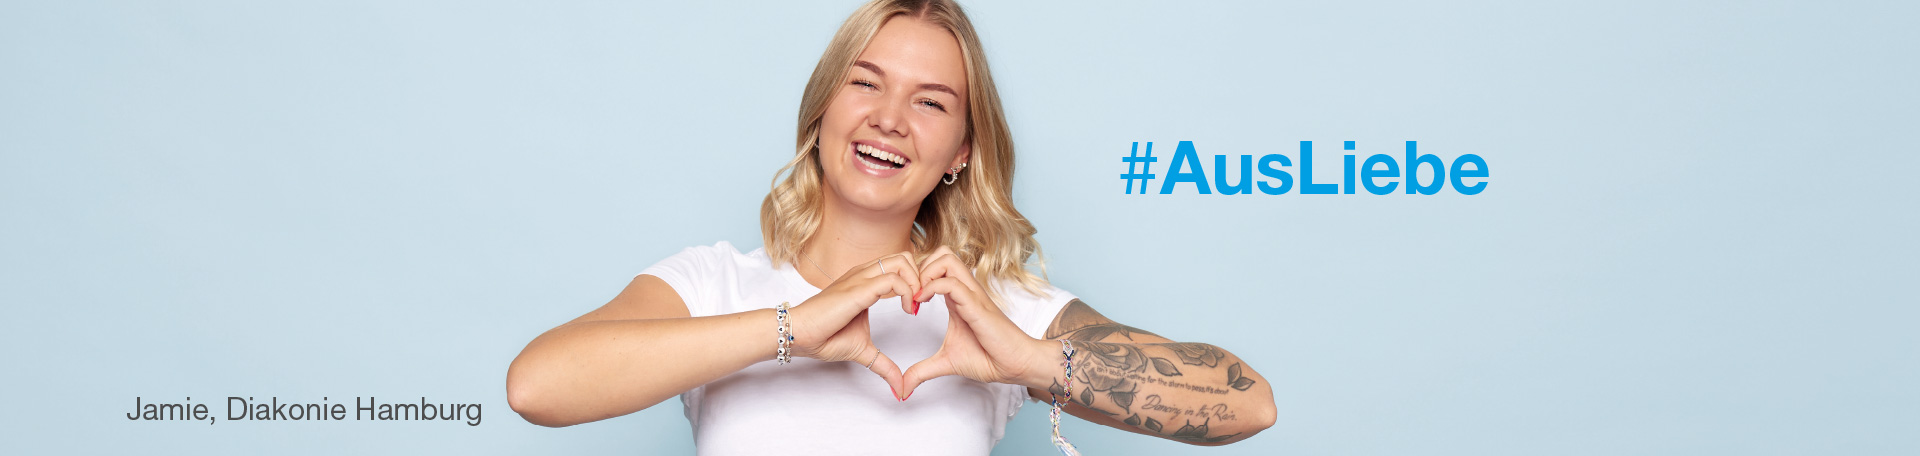 #AusLiebe - Frau mit Tattoo formt mit Händen Herzsymbol